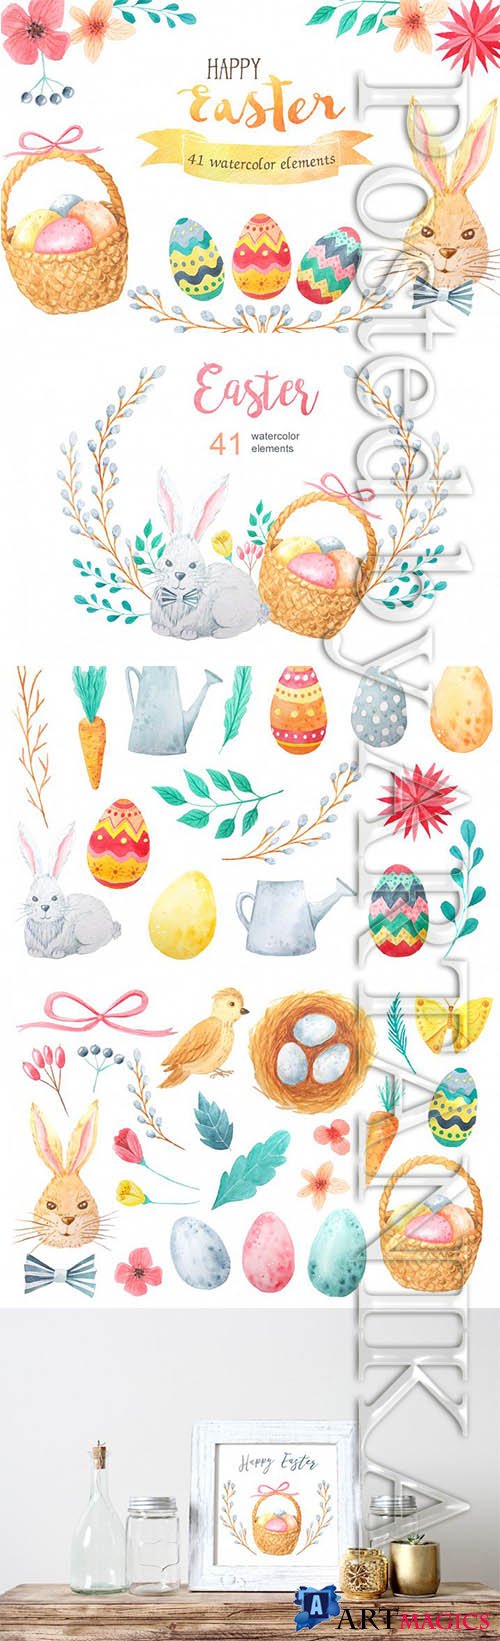 Designbundles - Watercolor Easter Set